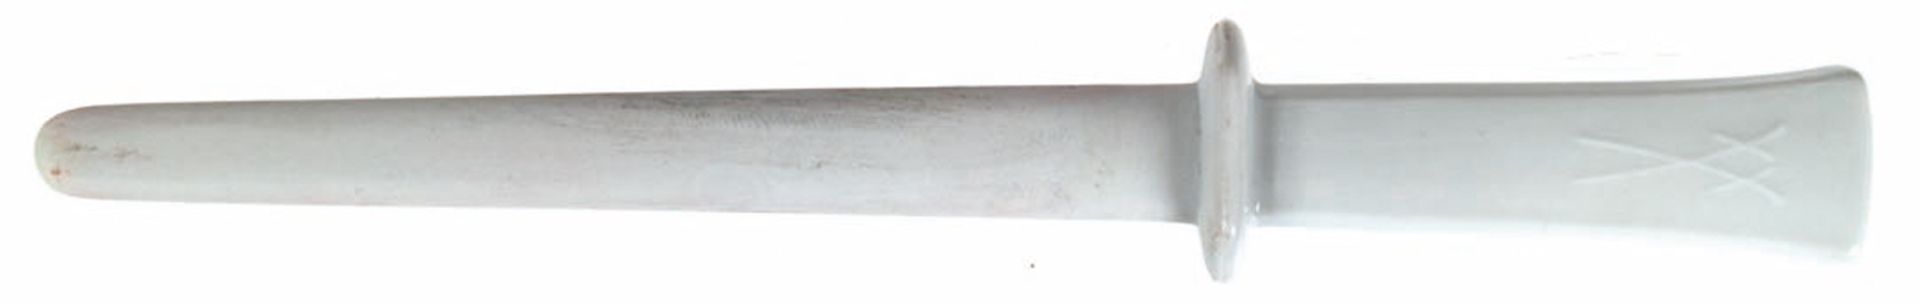 Meissen-Messerschärfer, weiß, Griff glasiert, 1. Wahl, L. 26 cm